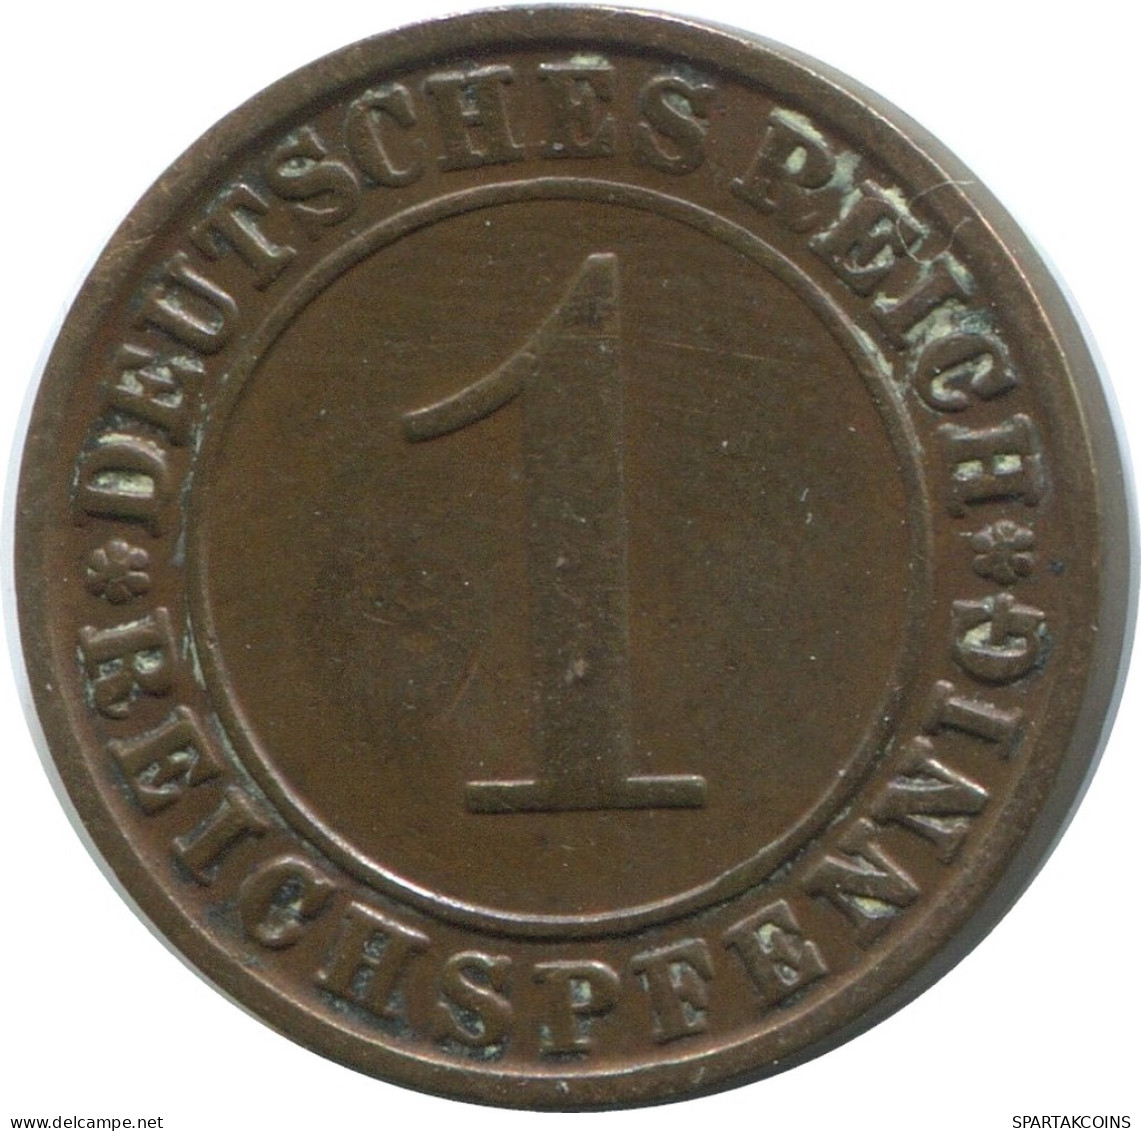 1 REICHSPFENNIG 1924 G GERMANY Coin #AD431.9.U - 1 Rentenpfennig & 1 Reichspfennig